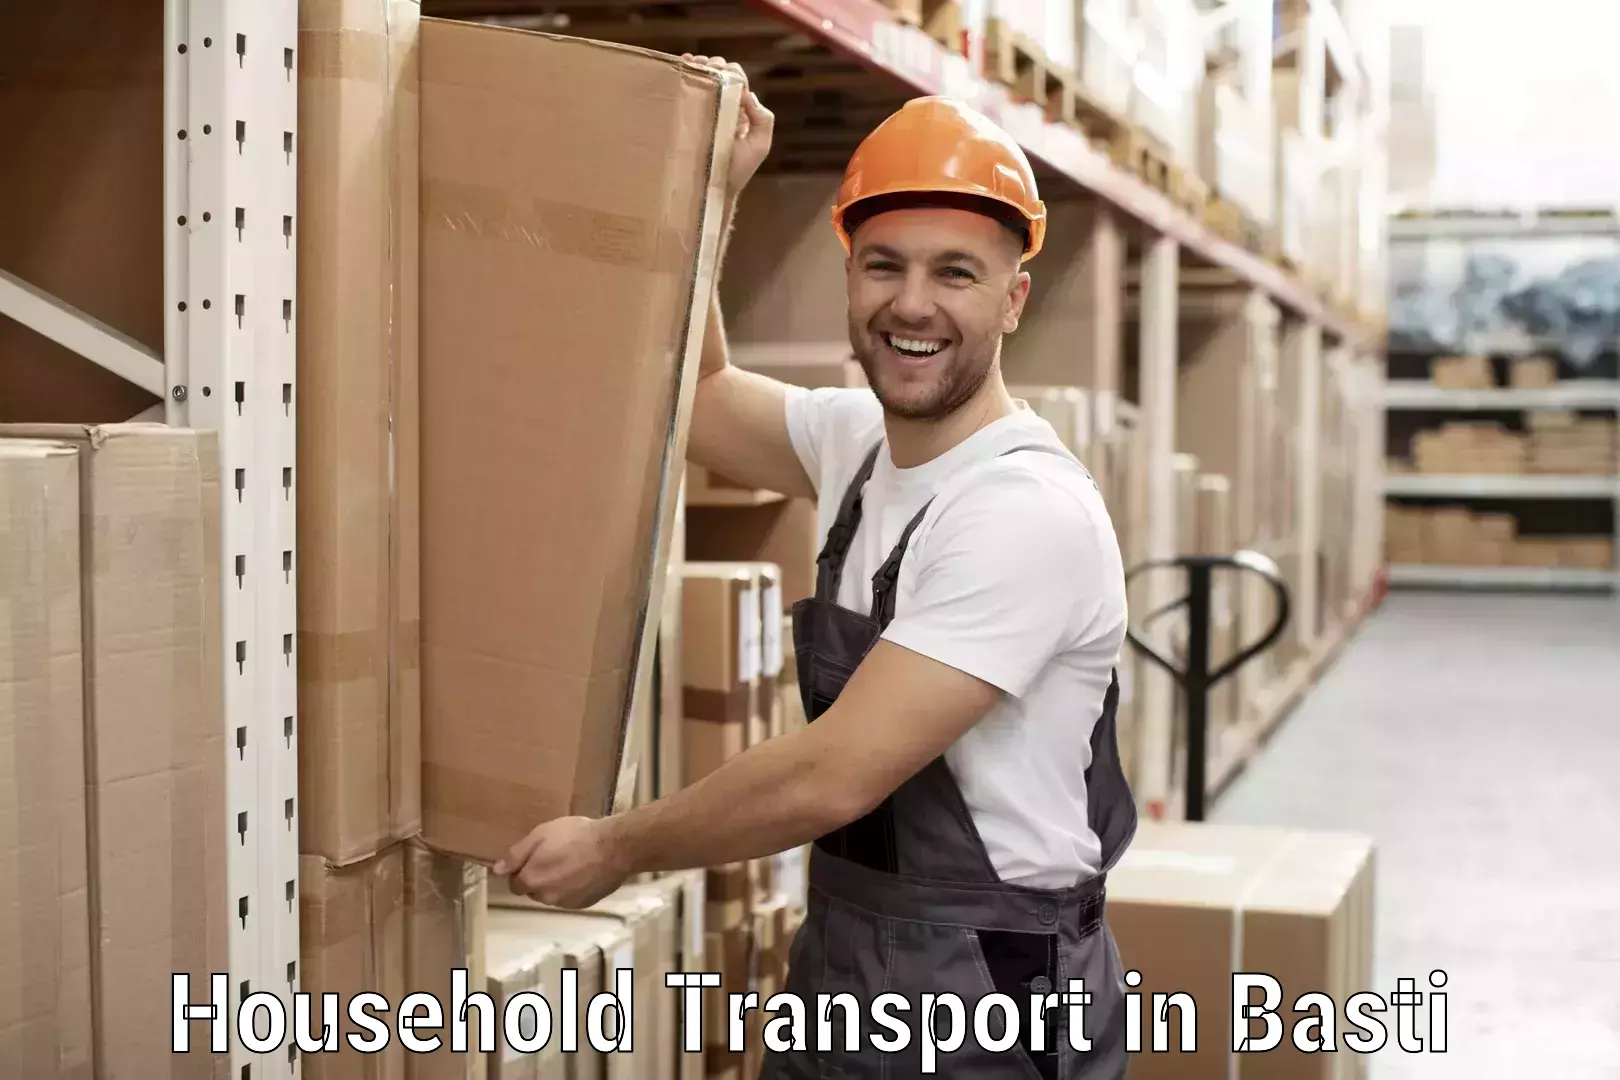 Household goods transporters in Basti